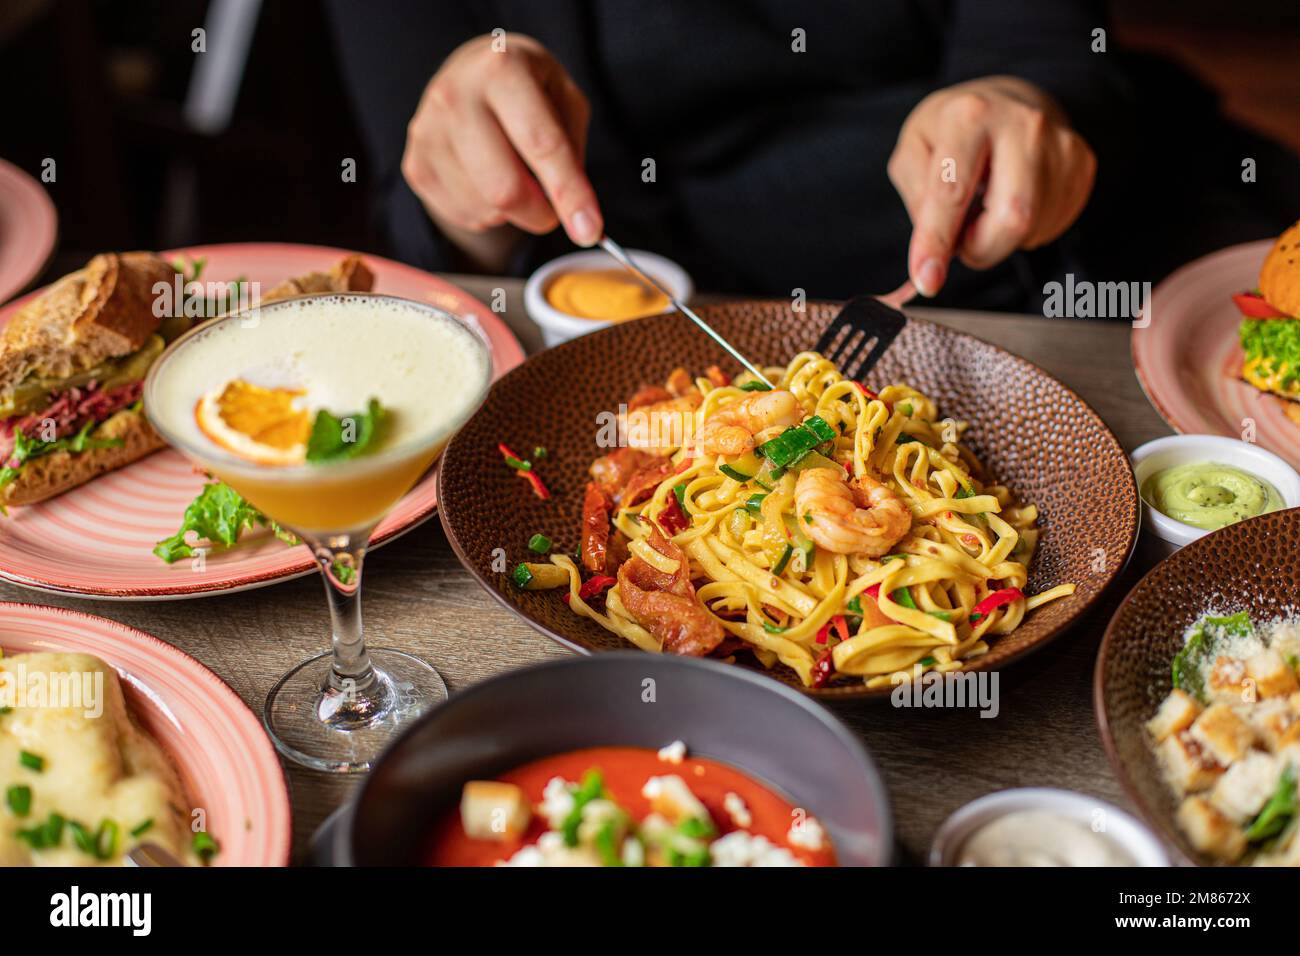 Umano con forchetta e coltello mangiare pasta con gamberetti dal piatto su tavolo pieno di cibo delizioso. Piatti caldi e bevande alcoliche durante la cena festiva Foto Stock